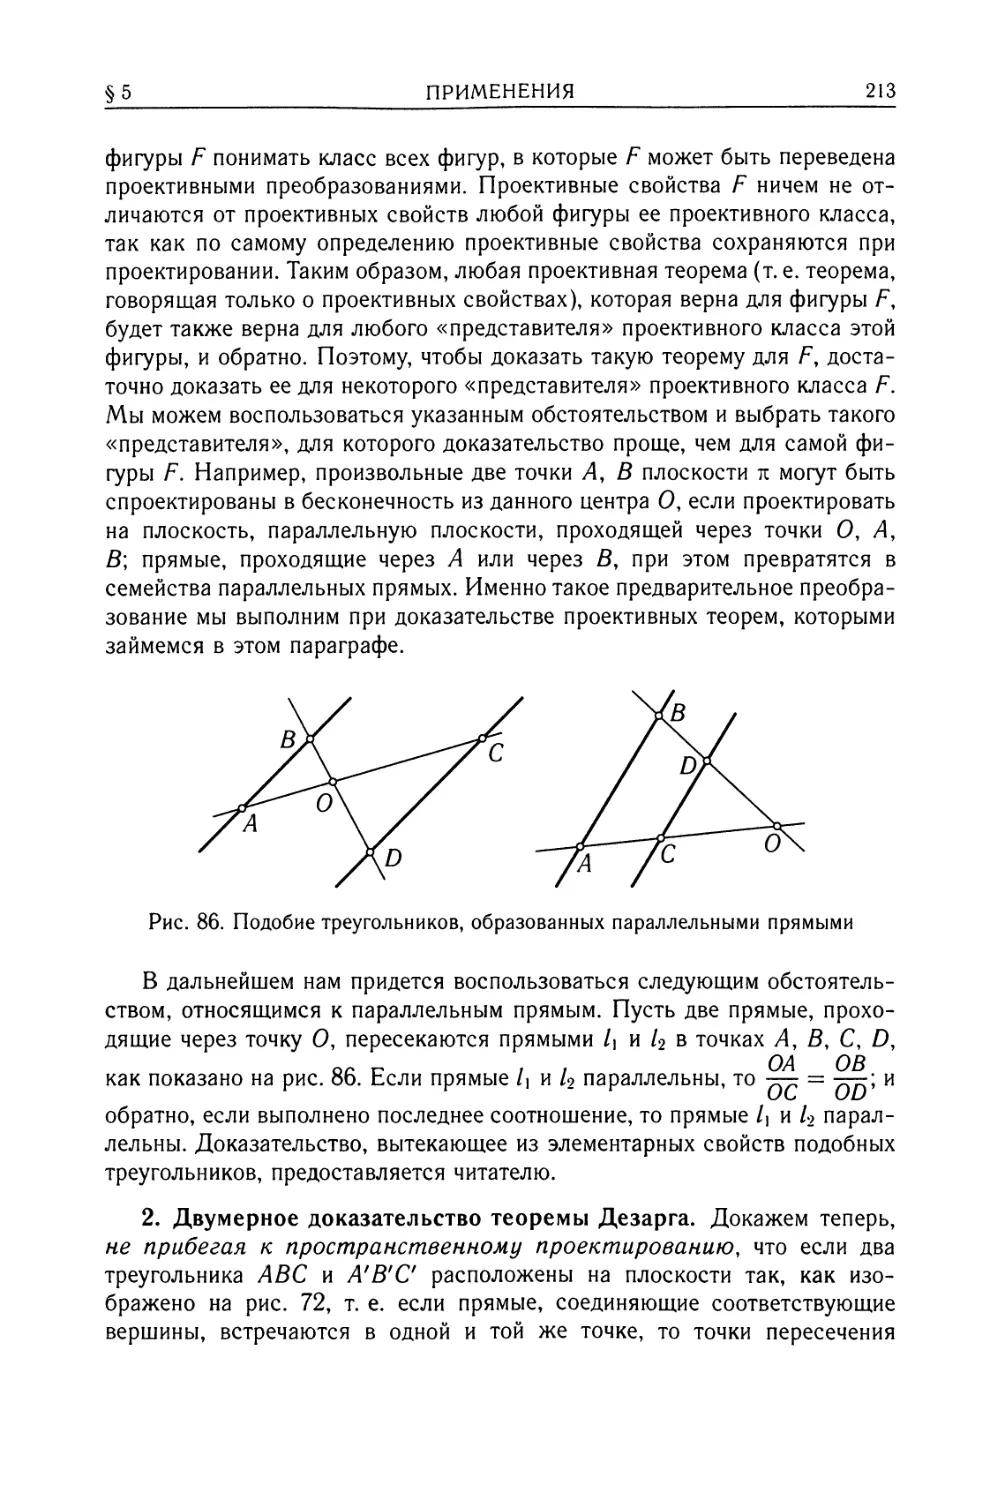 2. Двумерное доказательство теоремы Дезарга